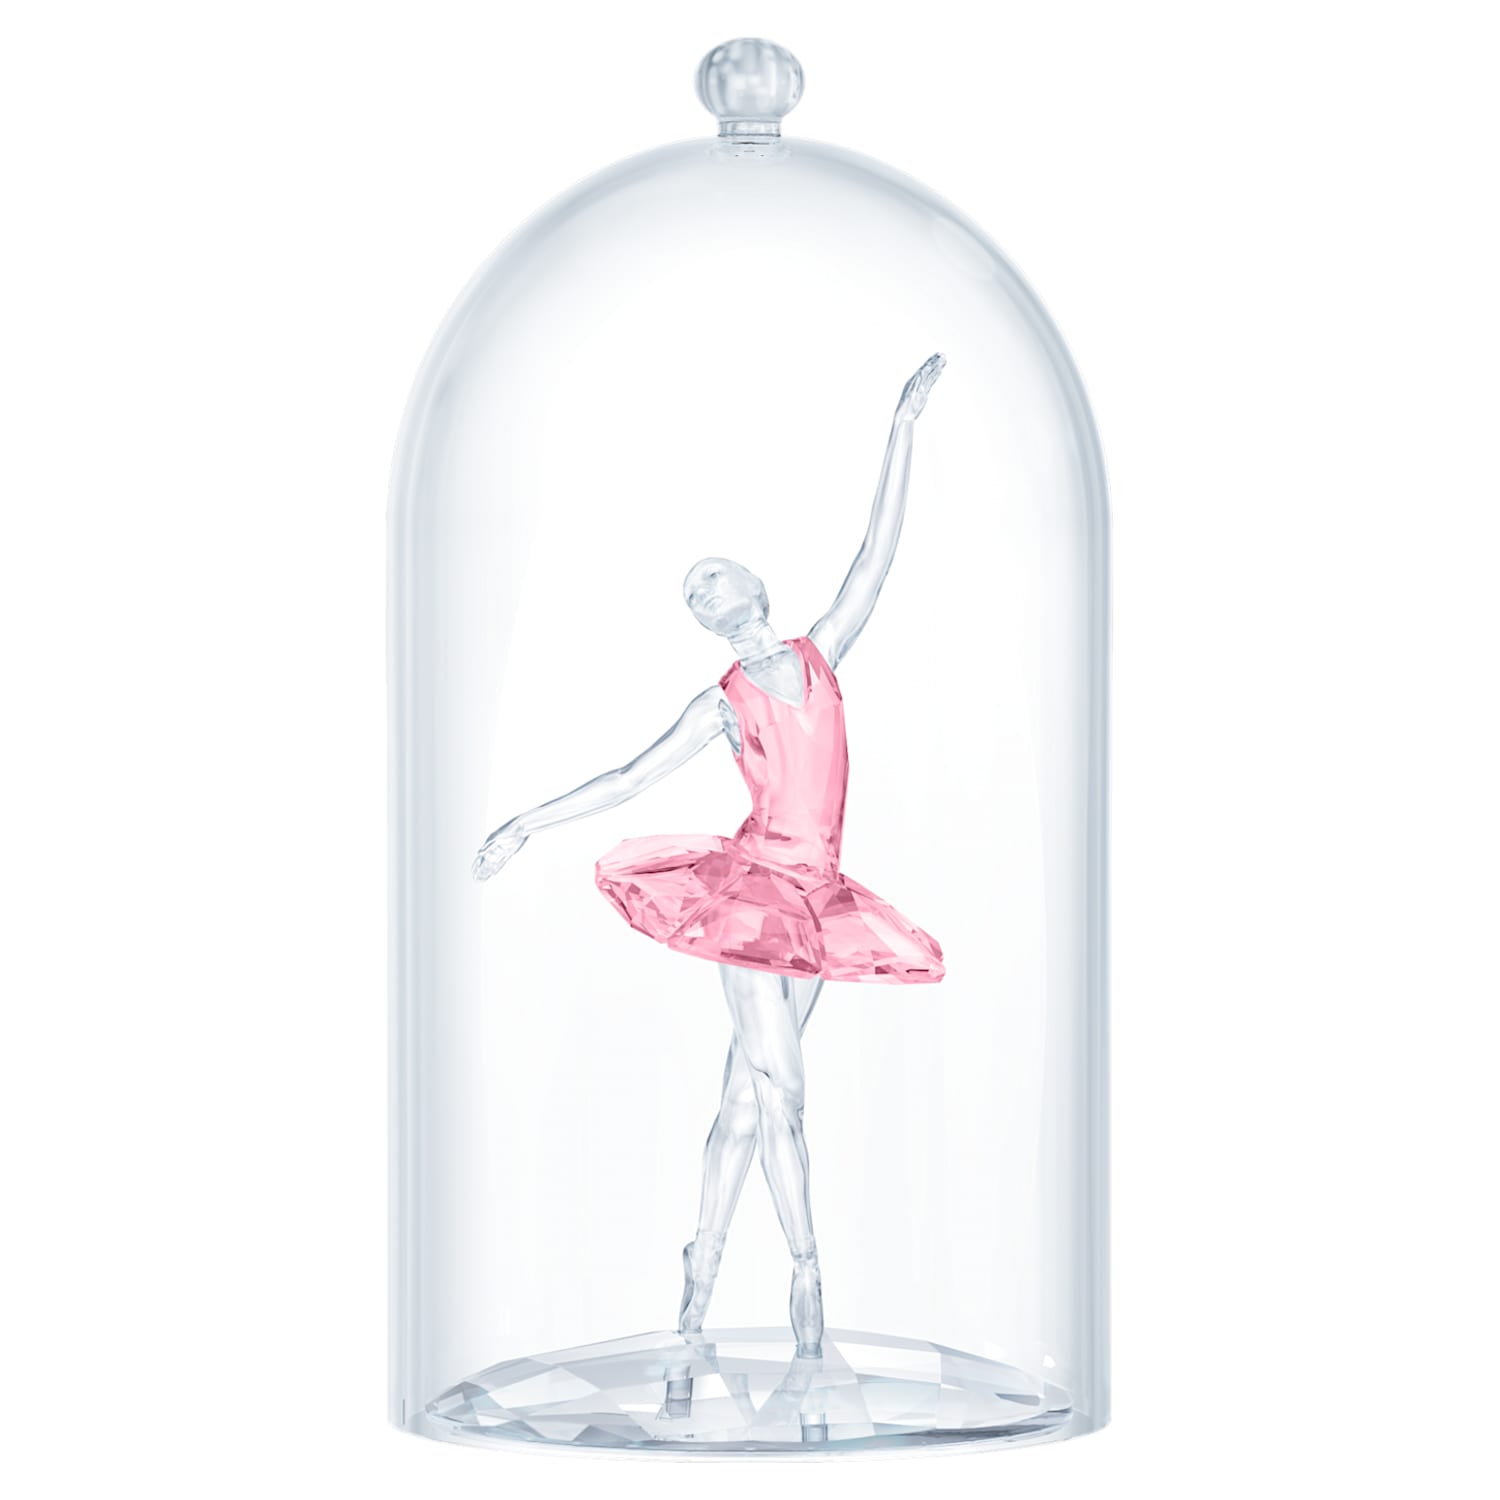 Kleren Interactie chef Ballerina under Bell jar | Swarovski